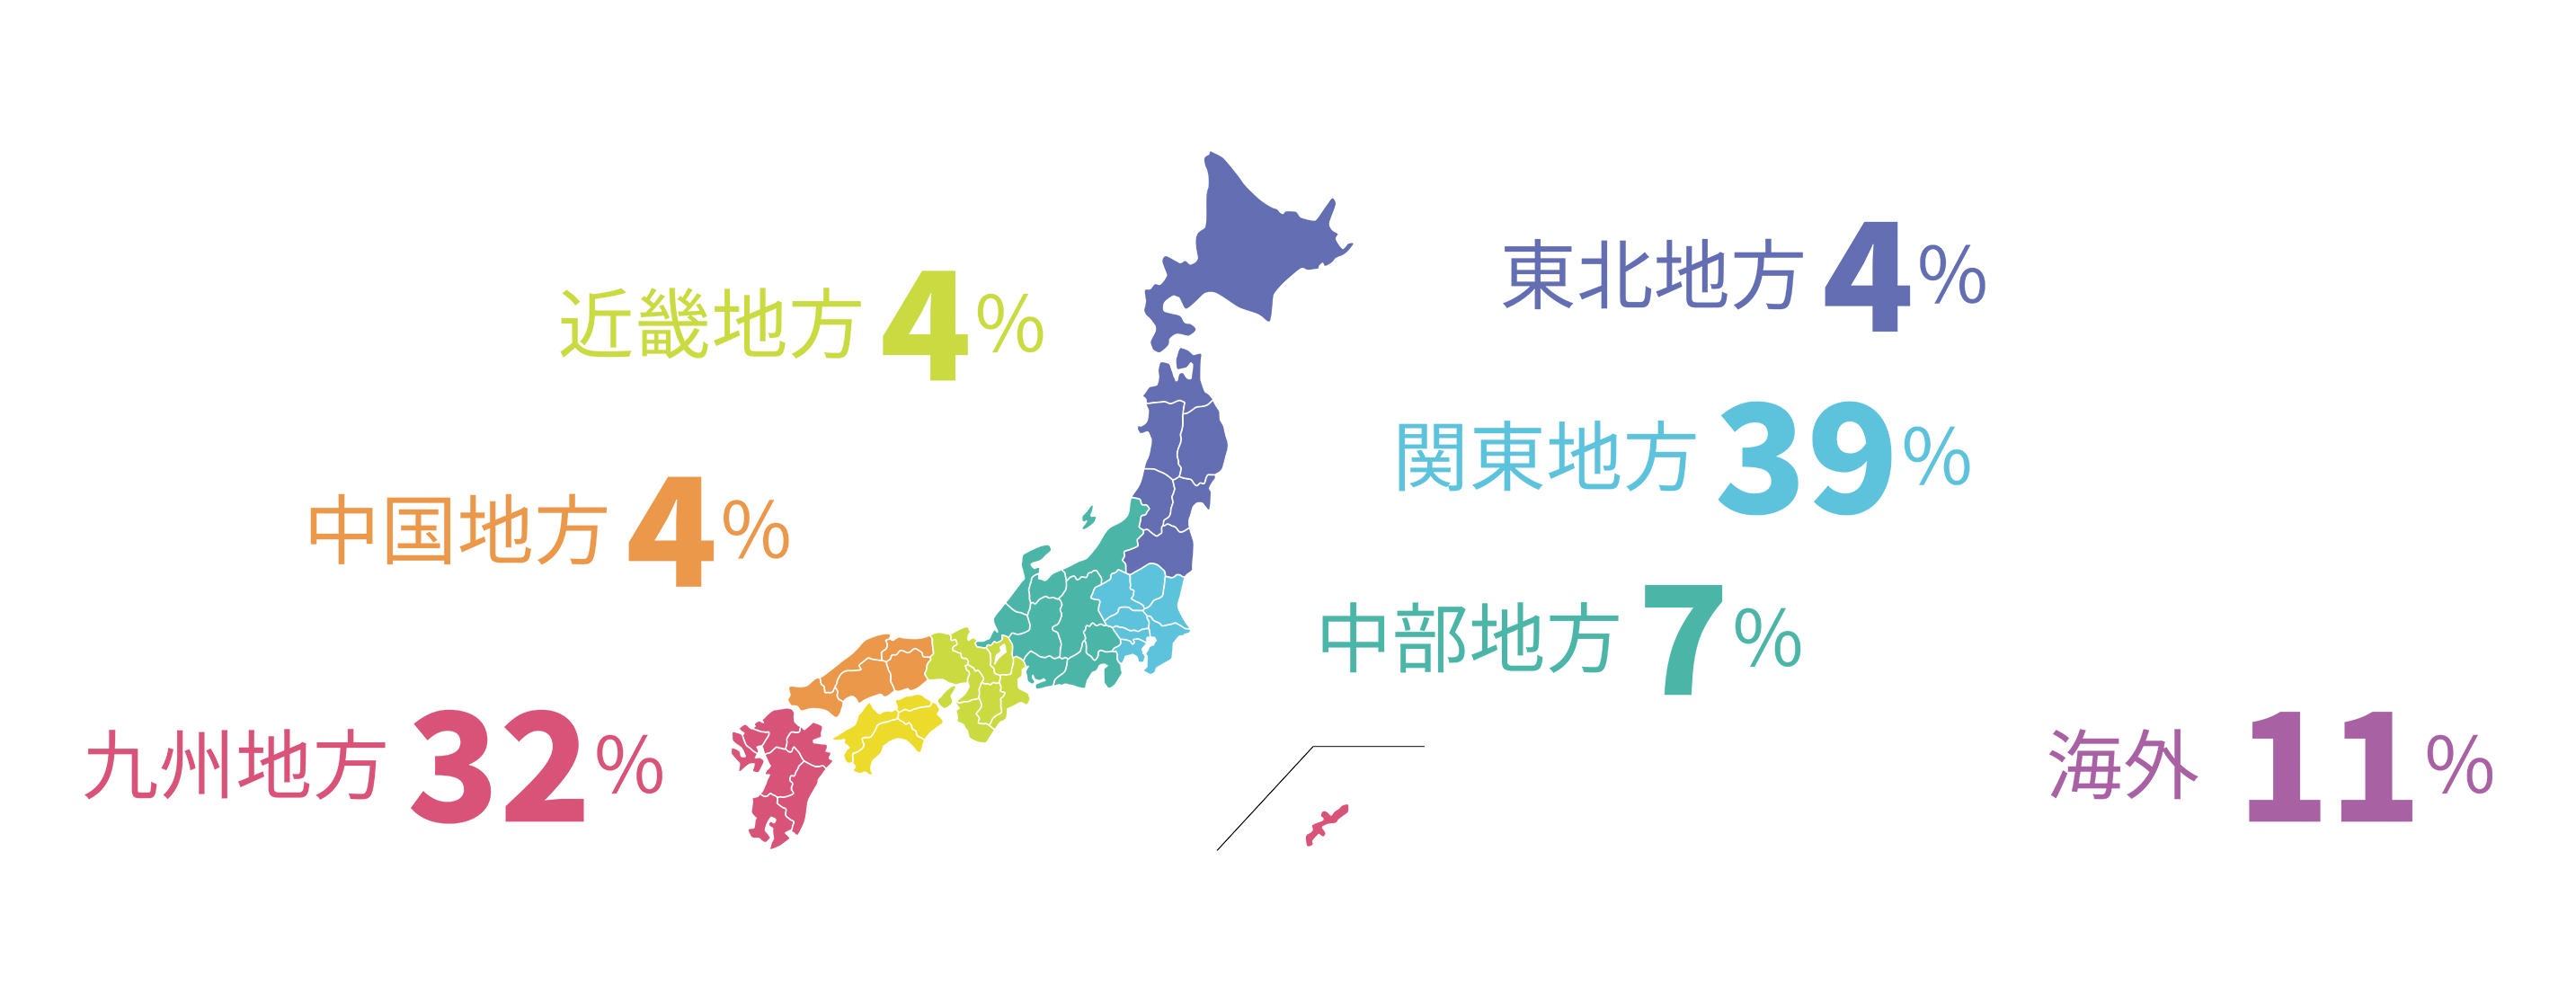 関東地方：39%　九州・沖縄地方：32%　海外：11% 東北地方：4%　近畿地方：4% 　中国地方：4%　そ中部地方：7%